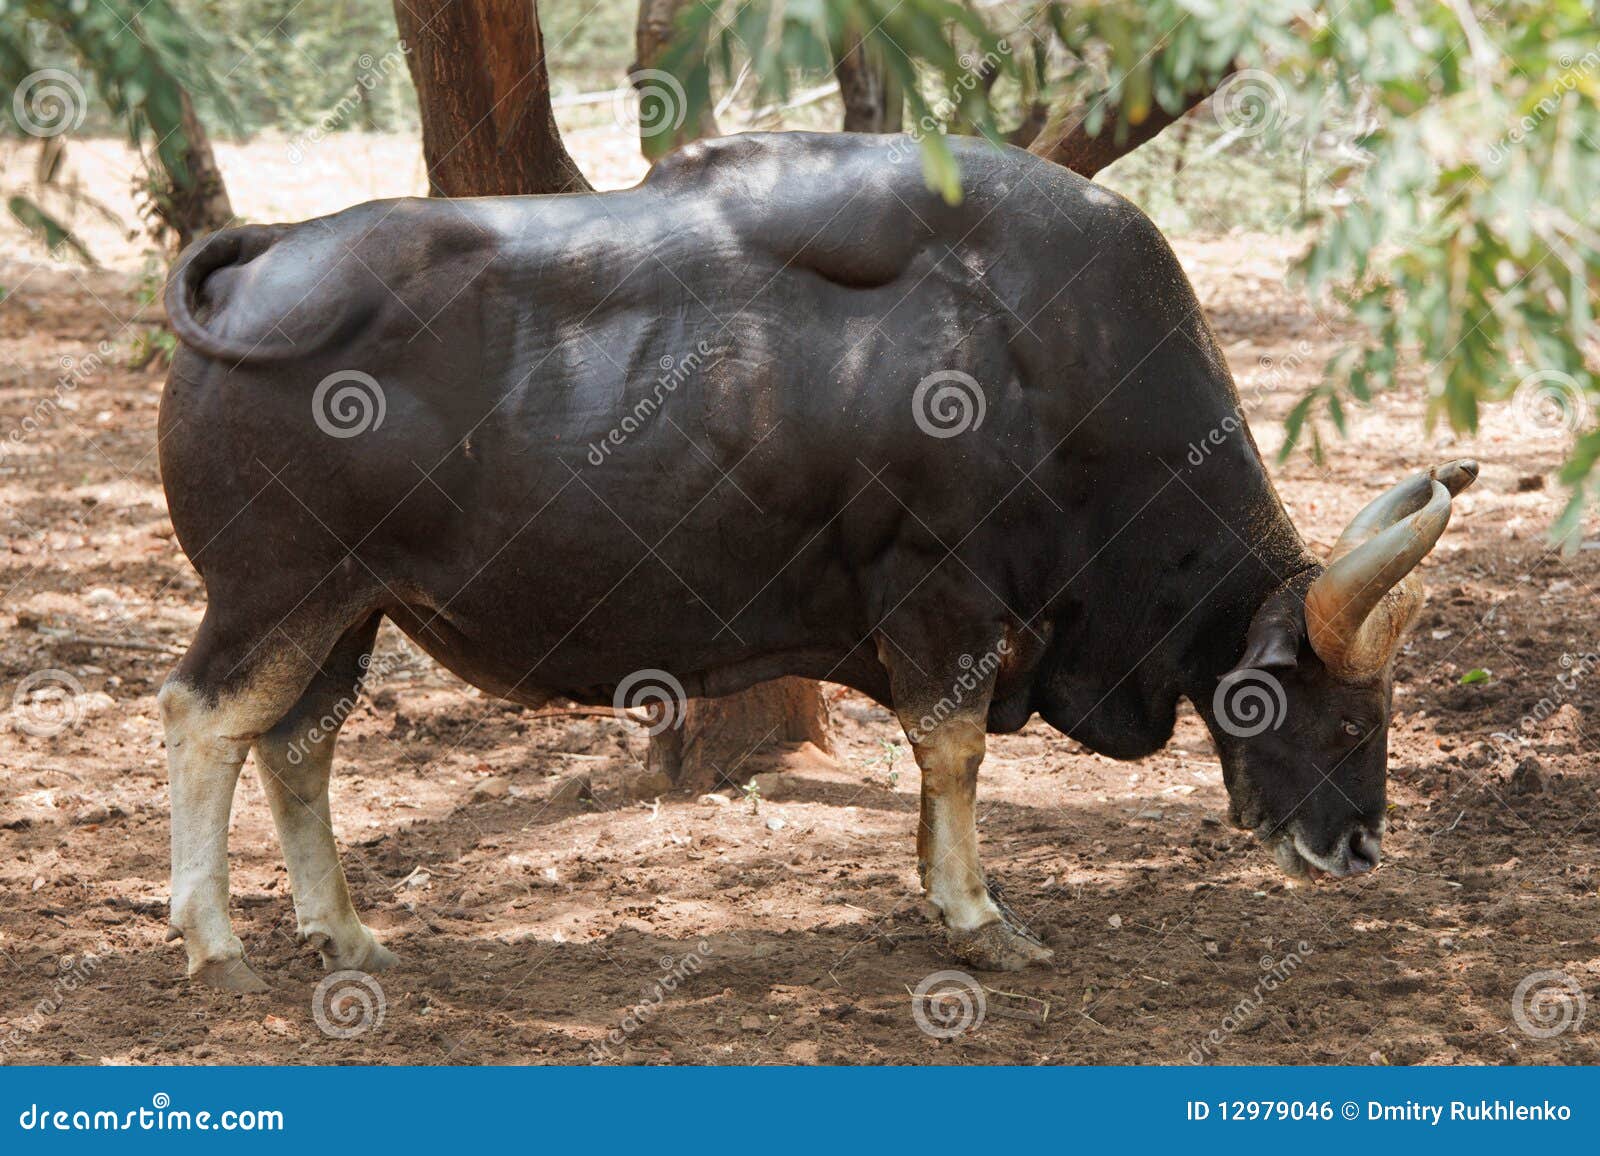 Gaur indio foto de archivo. Imagen de toro, selvas, bosque - 12979046